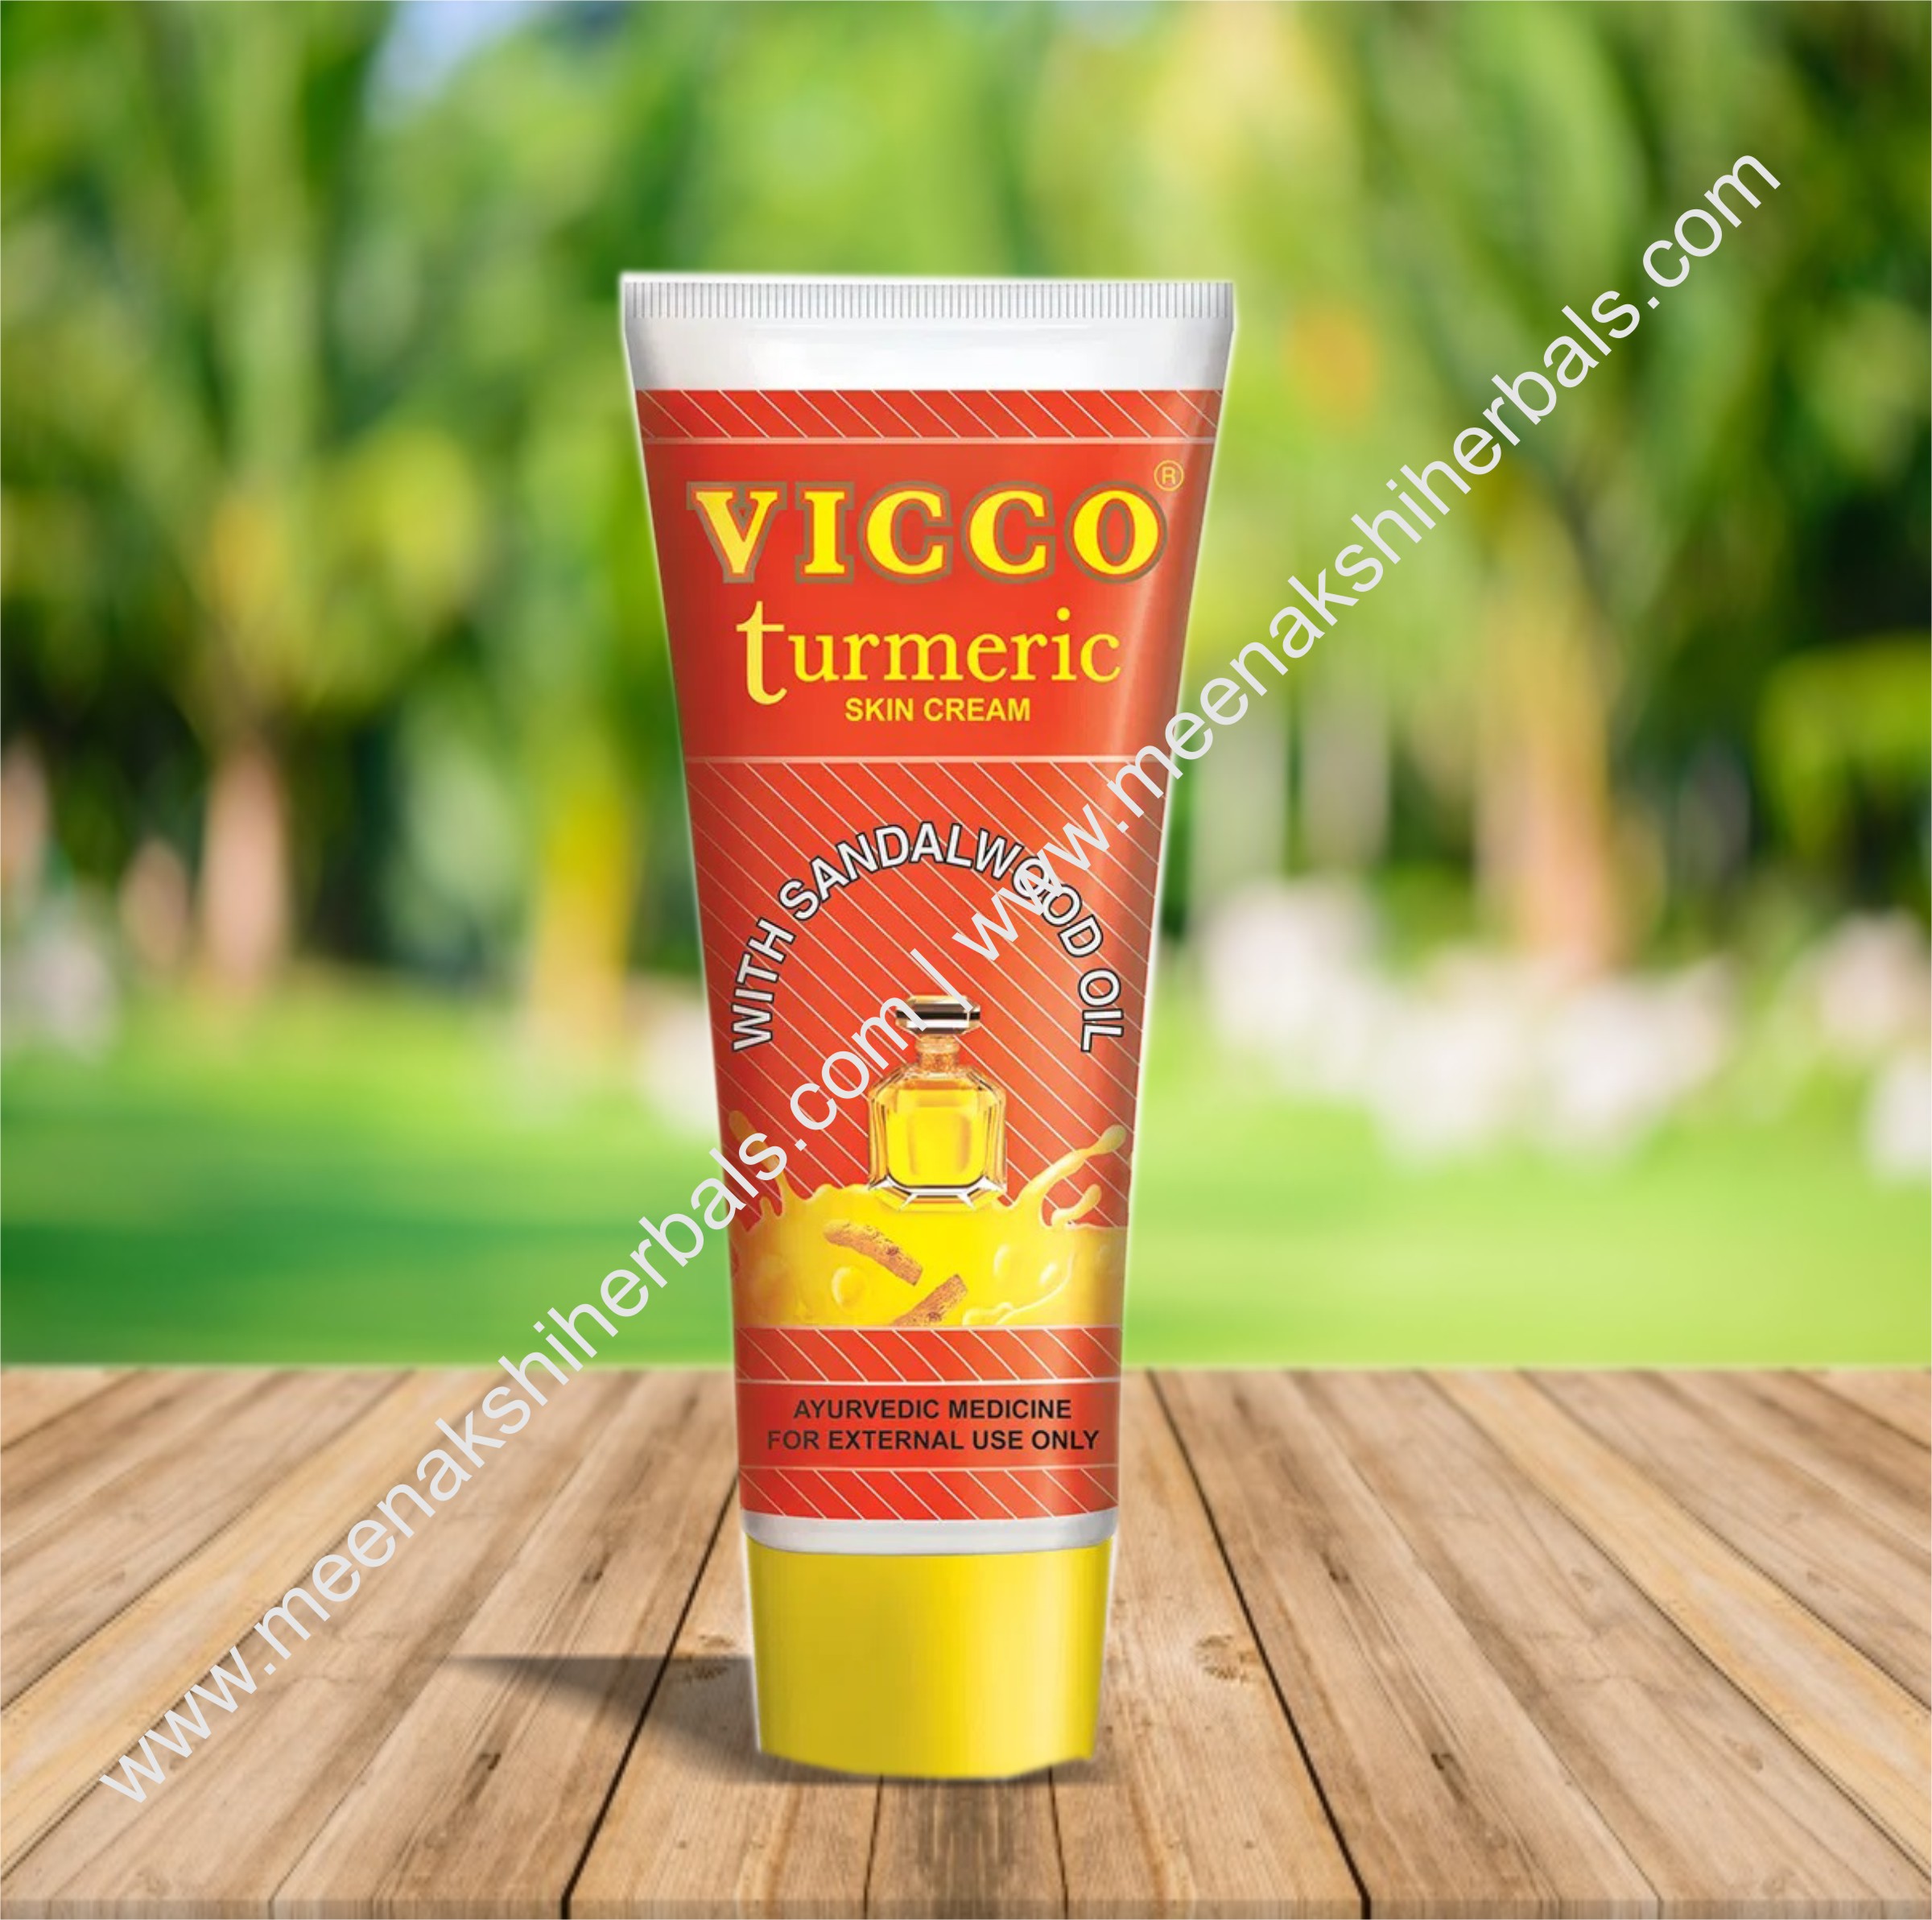 VICCO TURMERIC SKIN CREAM 30GM | Meenakshi Herbals